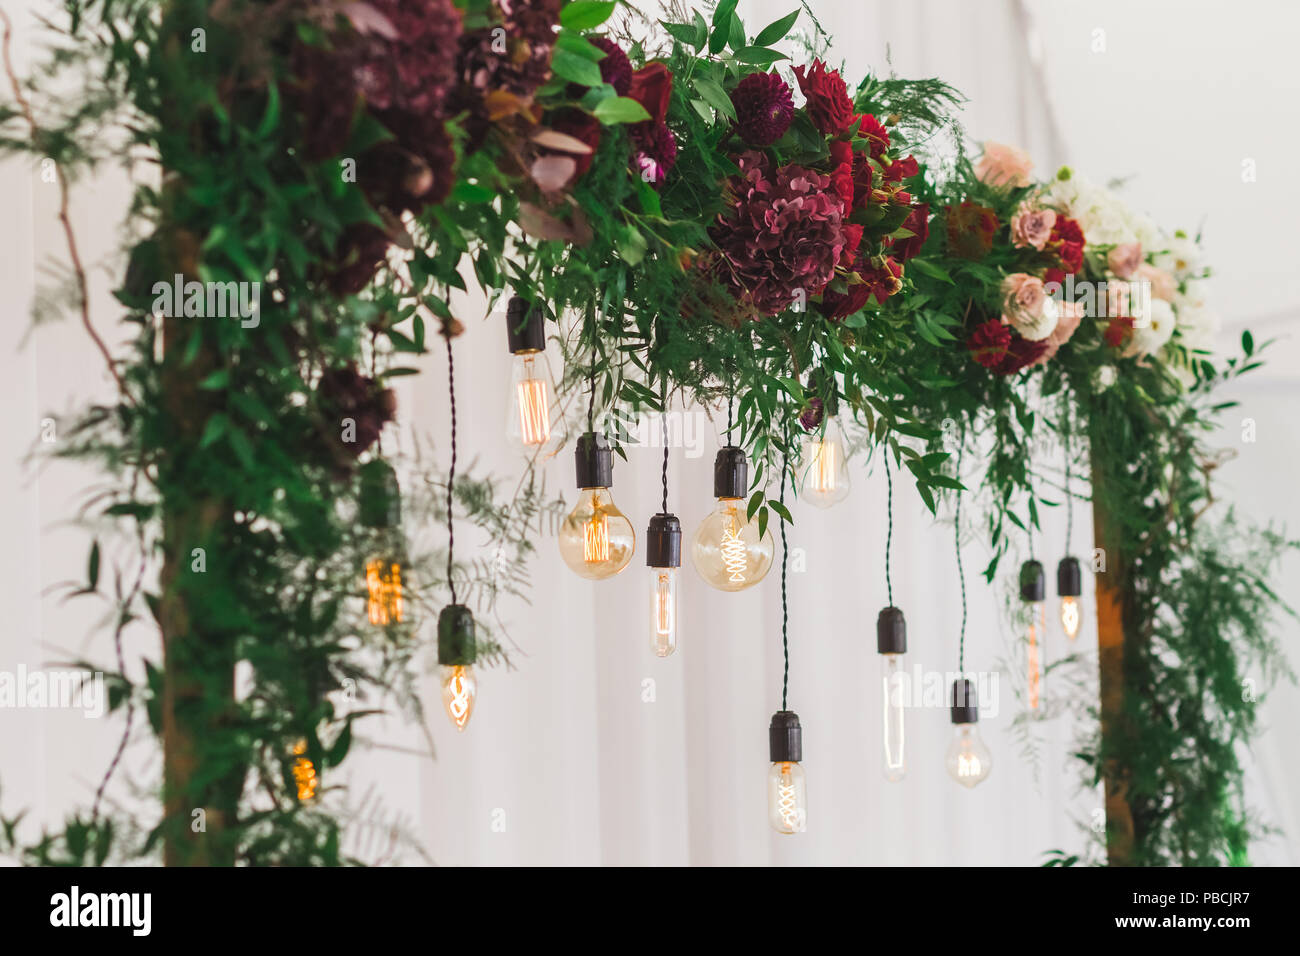 Ricevimento di nozze decorazione con vari elettrici lampade edison e rosso fresco e bordo fiori, stile rustico Foto Stock